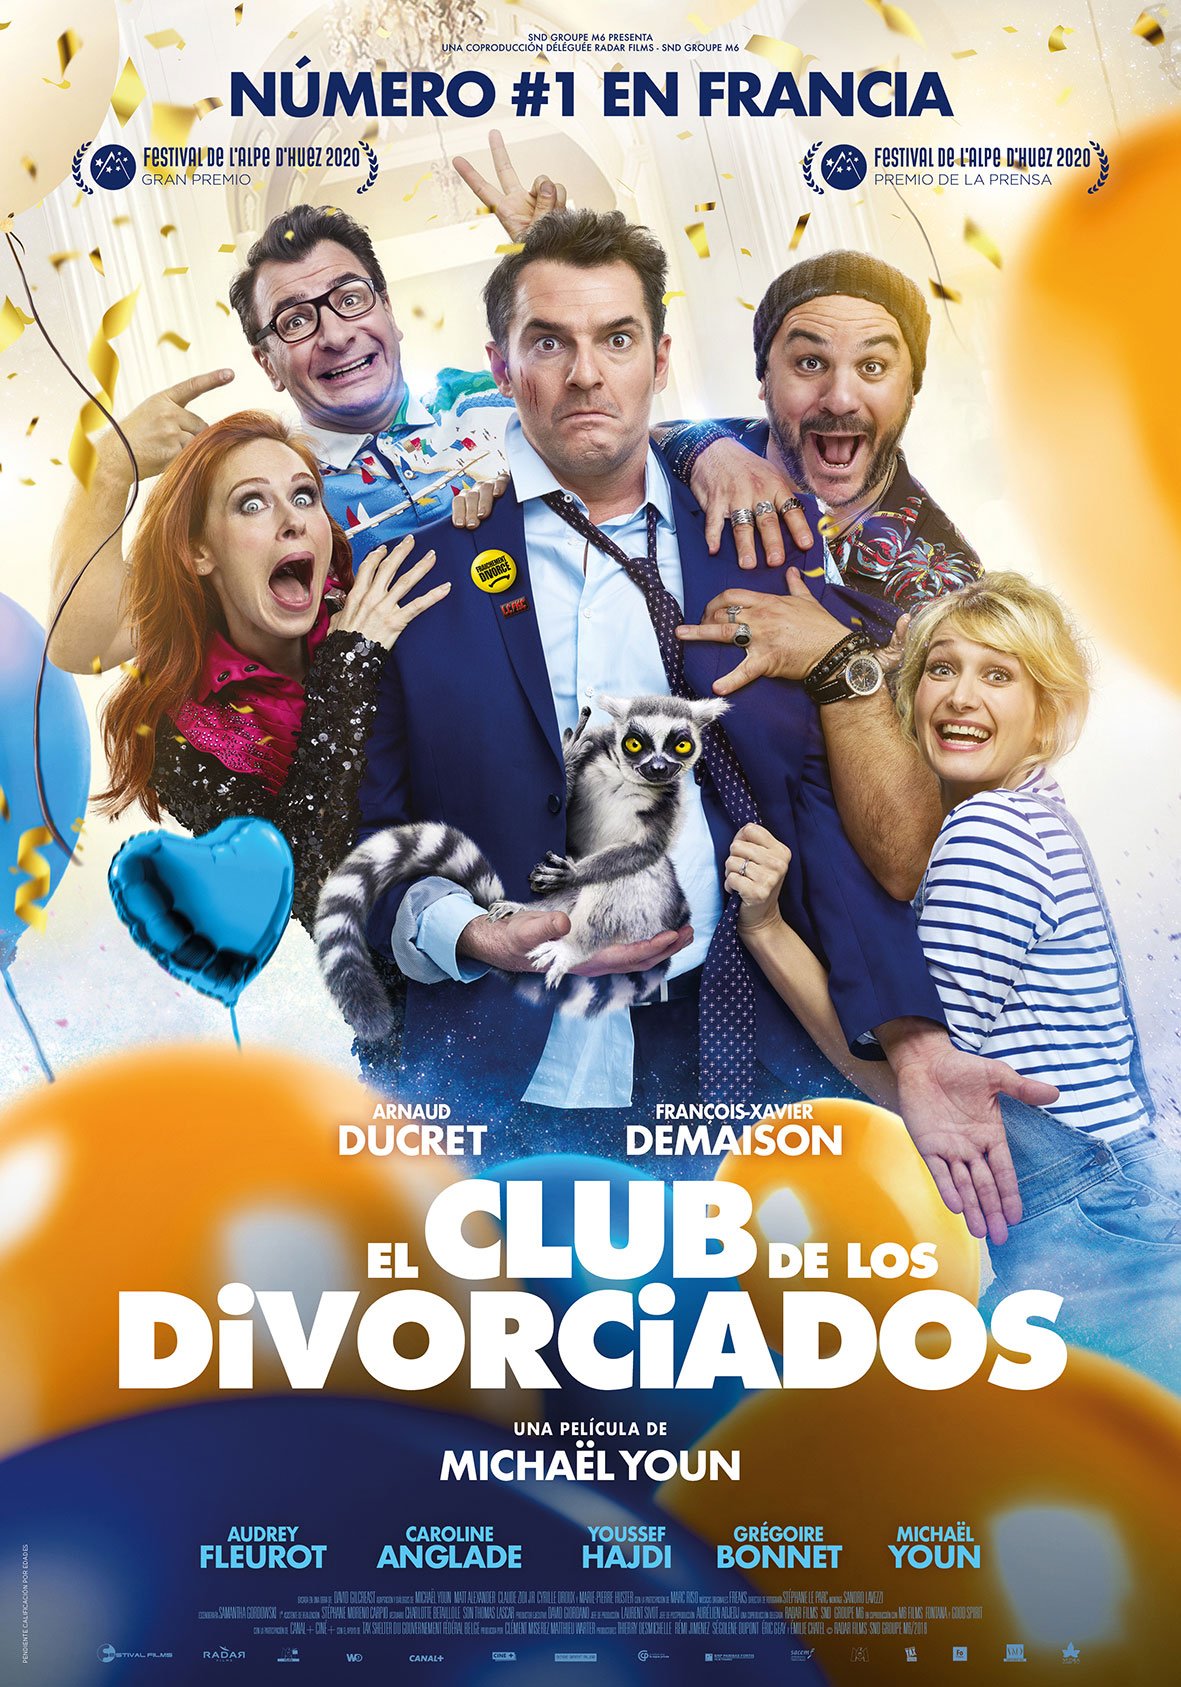 El club de los divorciados - Película 2019 